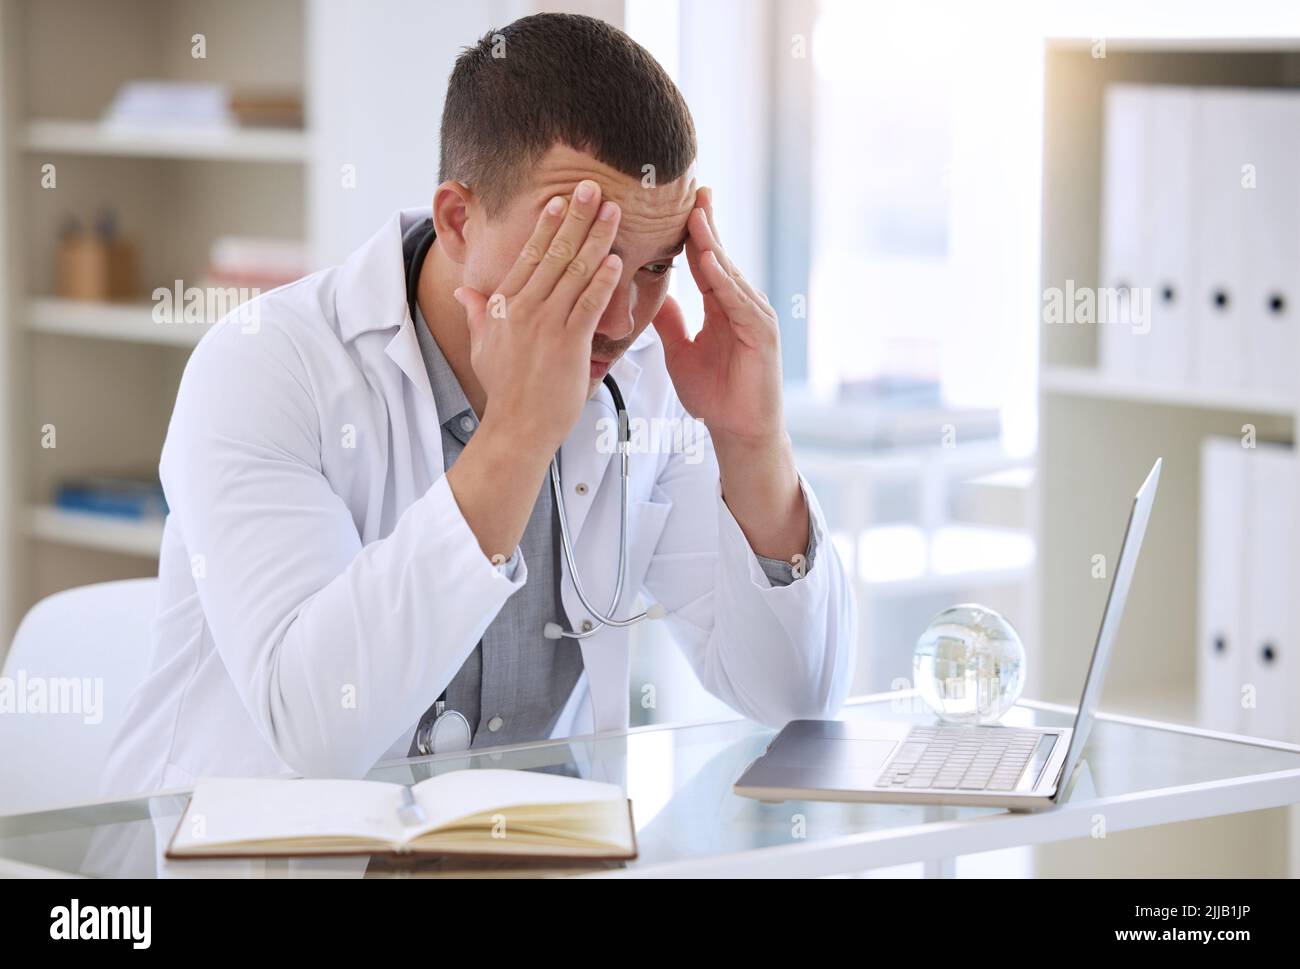 Mit diesen Kopfschmerzen kann ich nicht klar denken: Ein hübscher junger Arzt, der allein in seiner Klinik sitzt und sich gestresst fühlt, während er seinen Laptop benutzt. Stockfoto